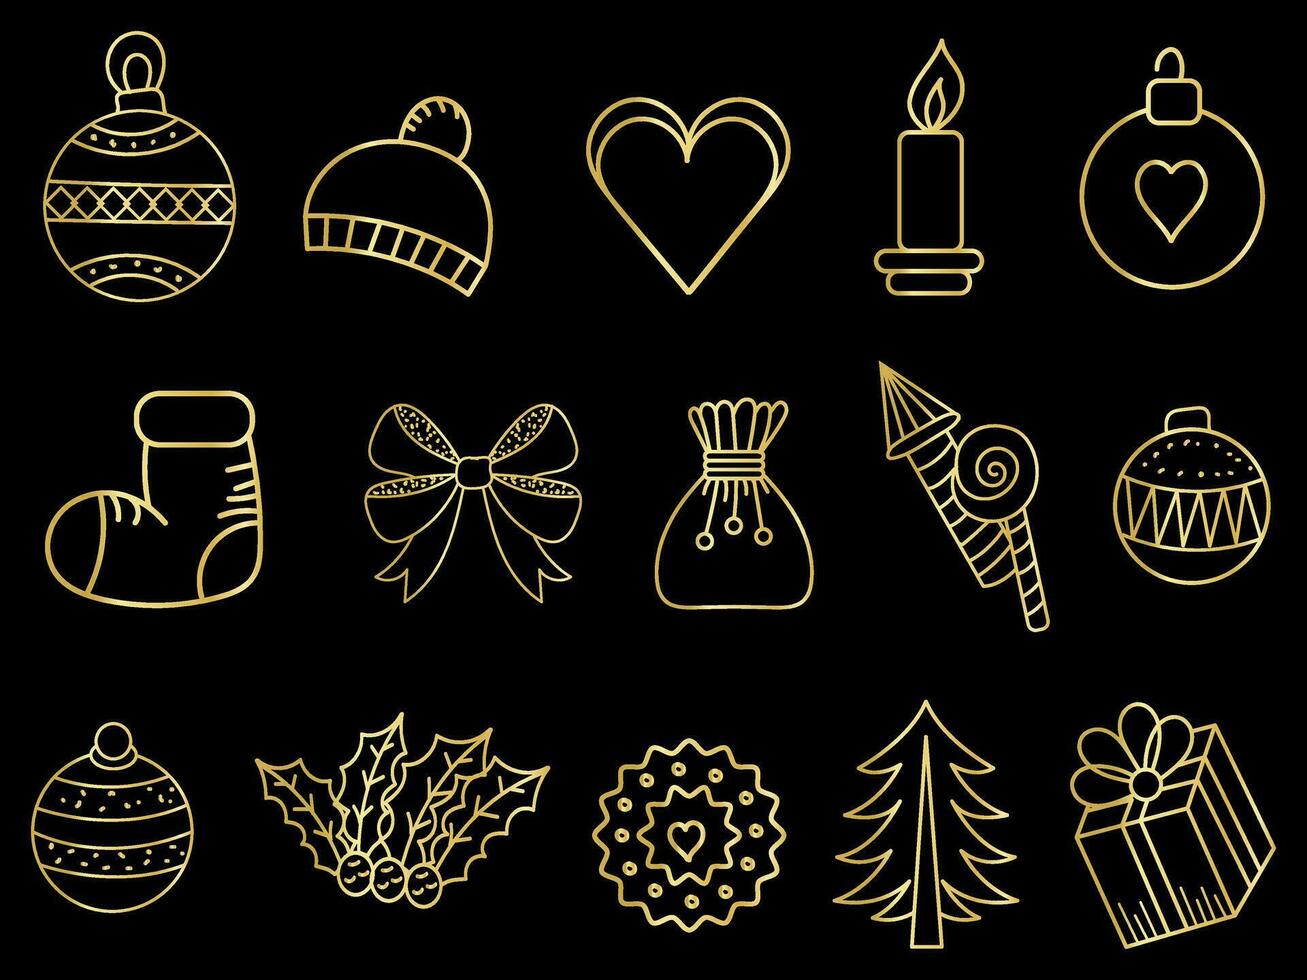 gyllene jul ornament uppsättning med bollar, snöflingor, hattar, stjärna, jul träd, orange, strumpa, gåva, dryck och girlanger. vektor